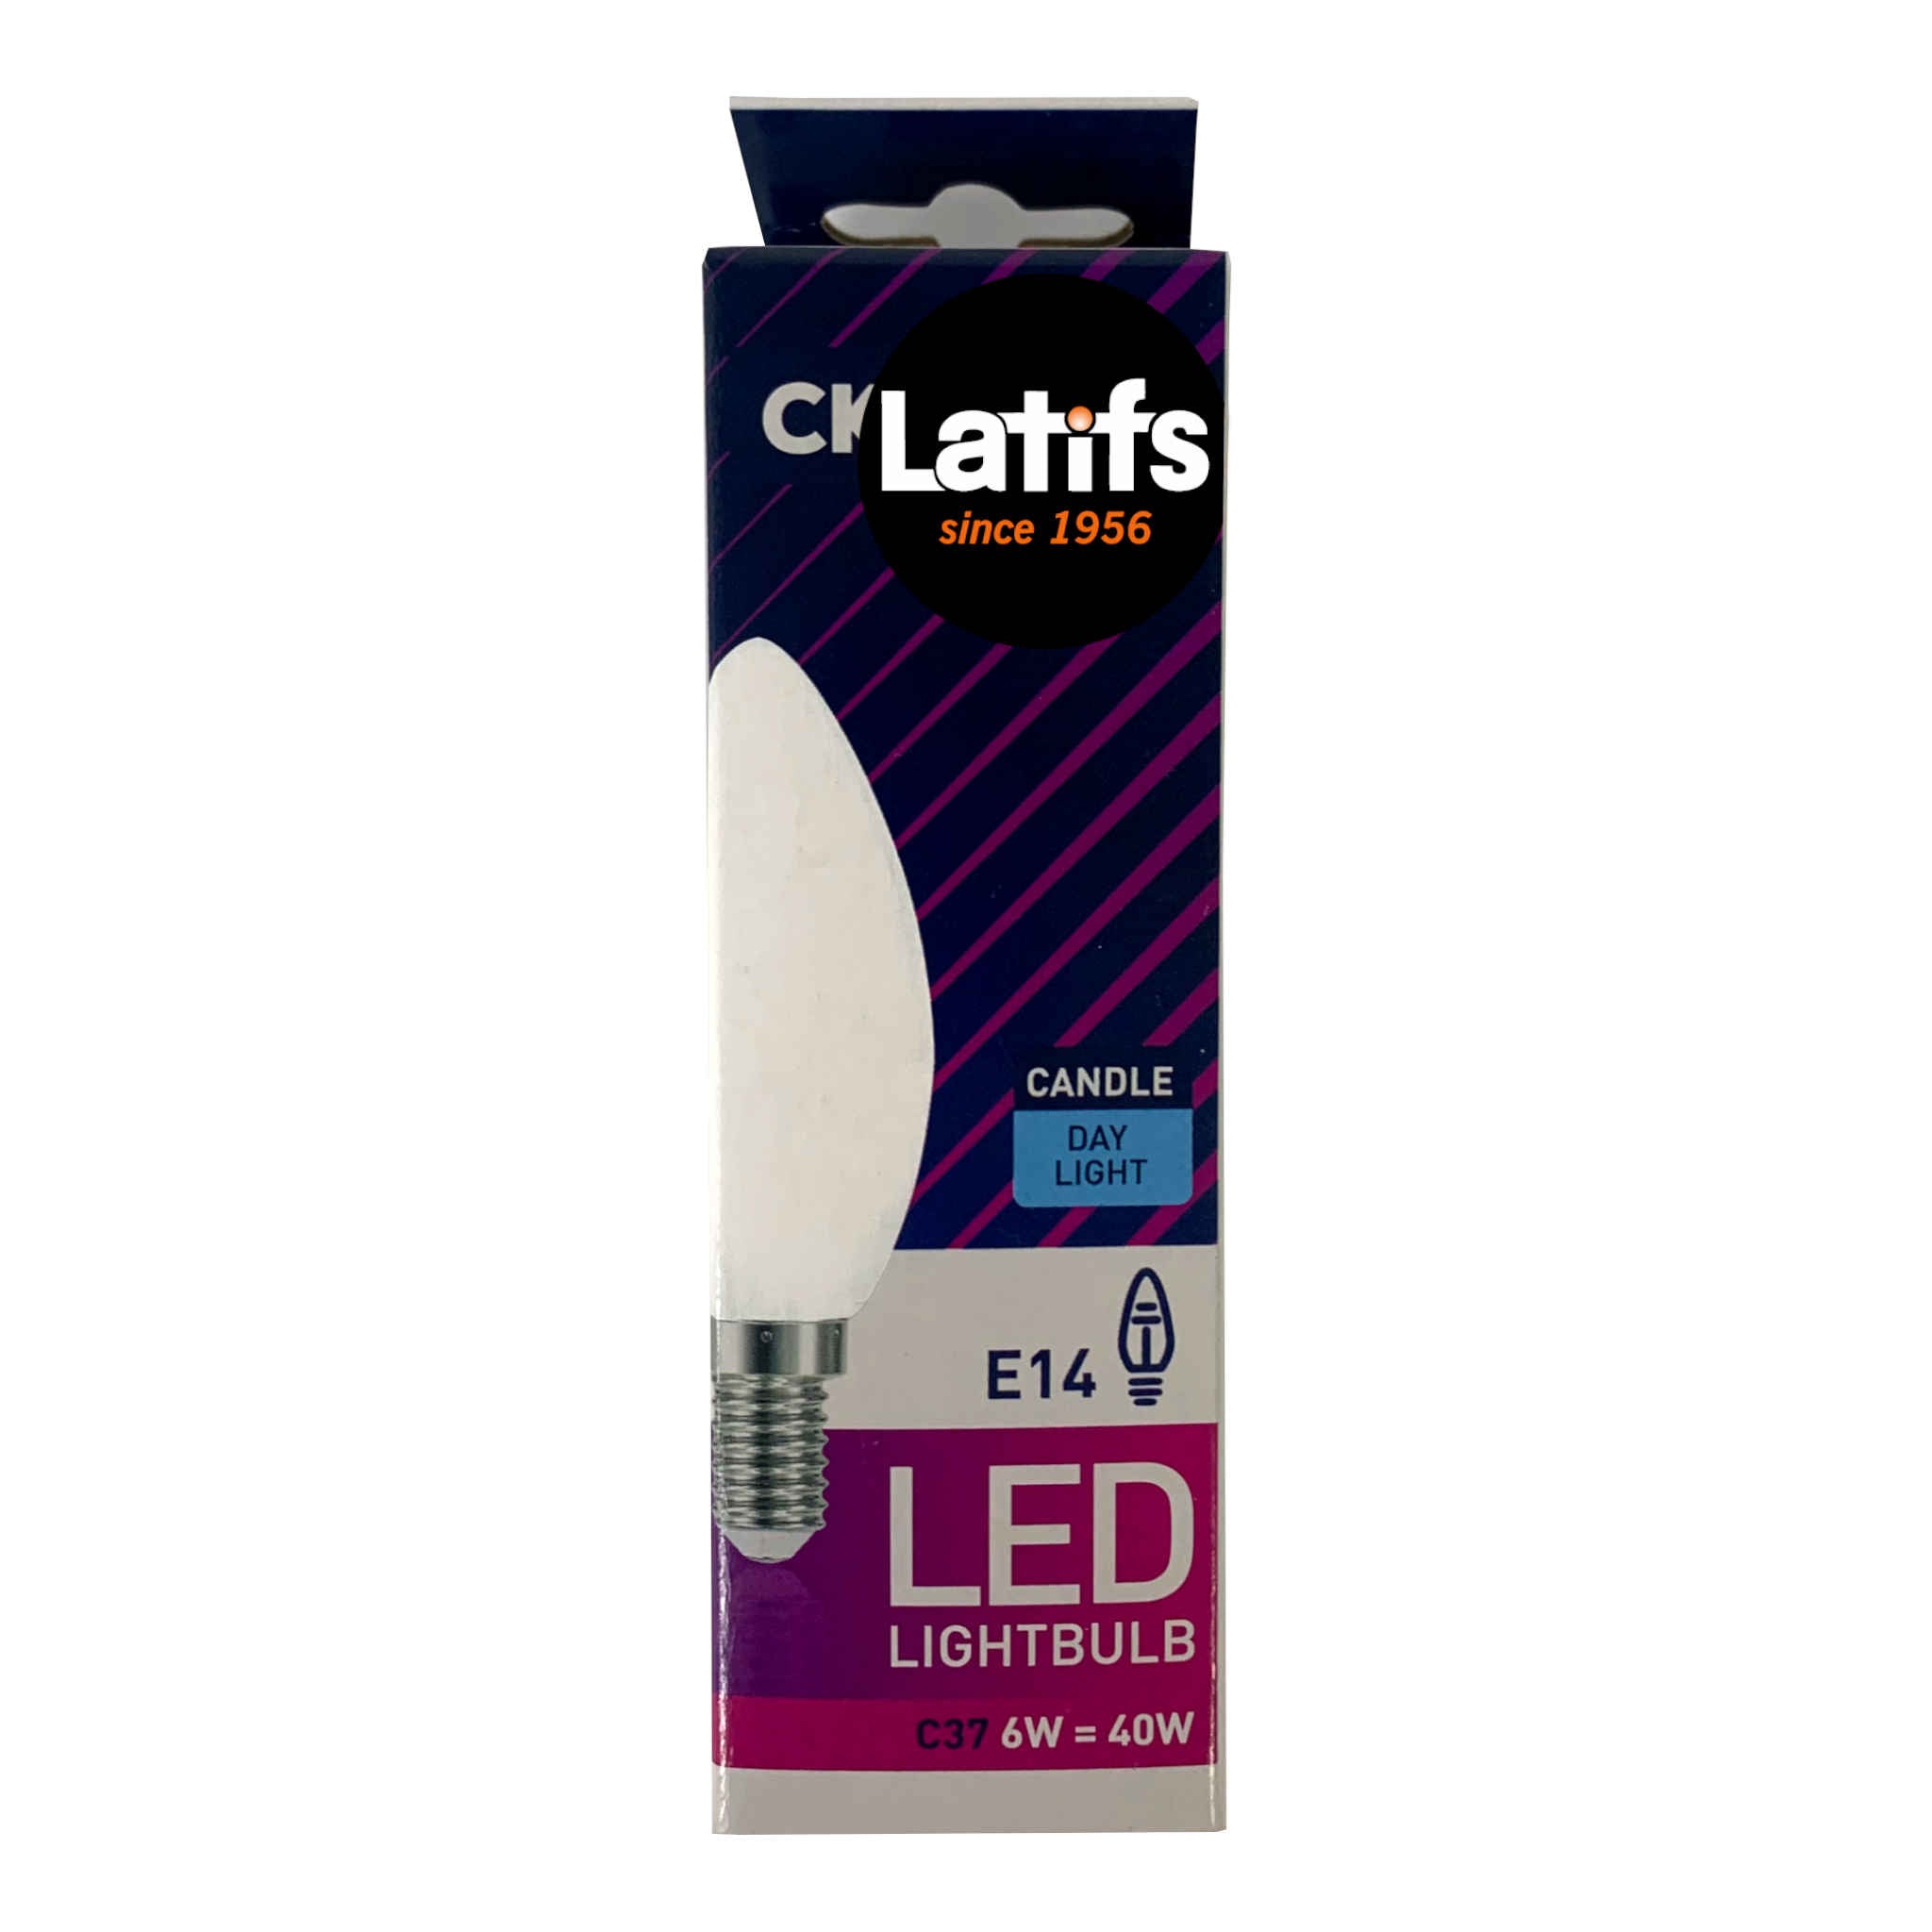 Led Lightbulb | C37 Day Light | E14 | 6W = 40W